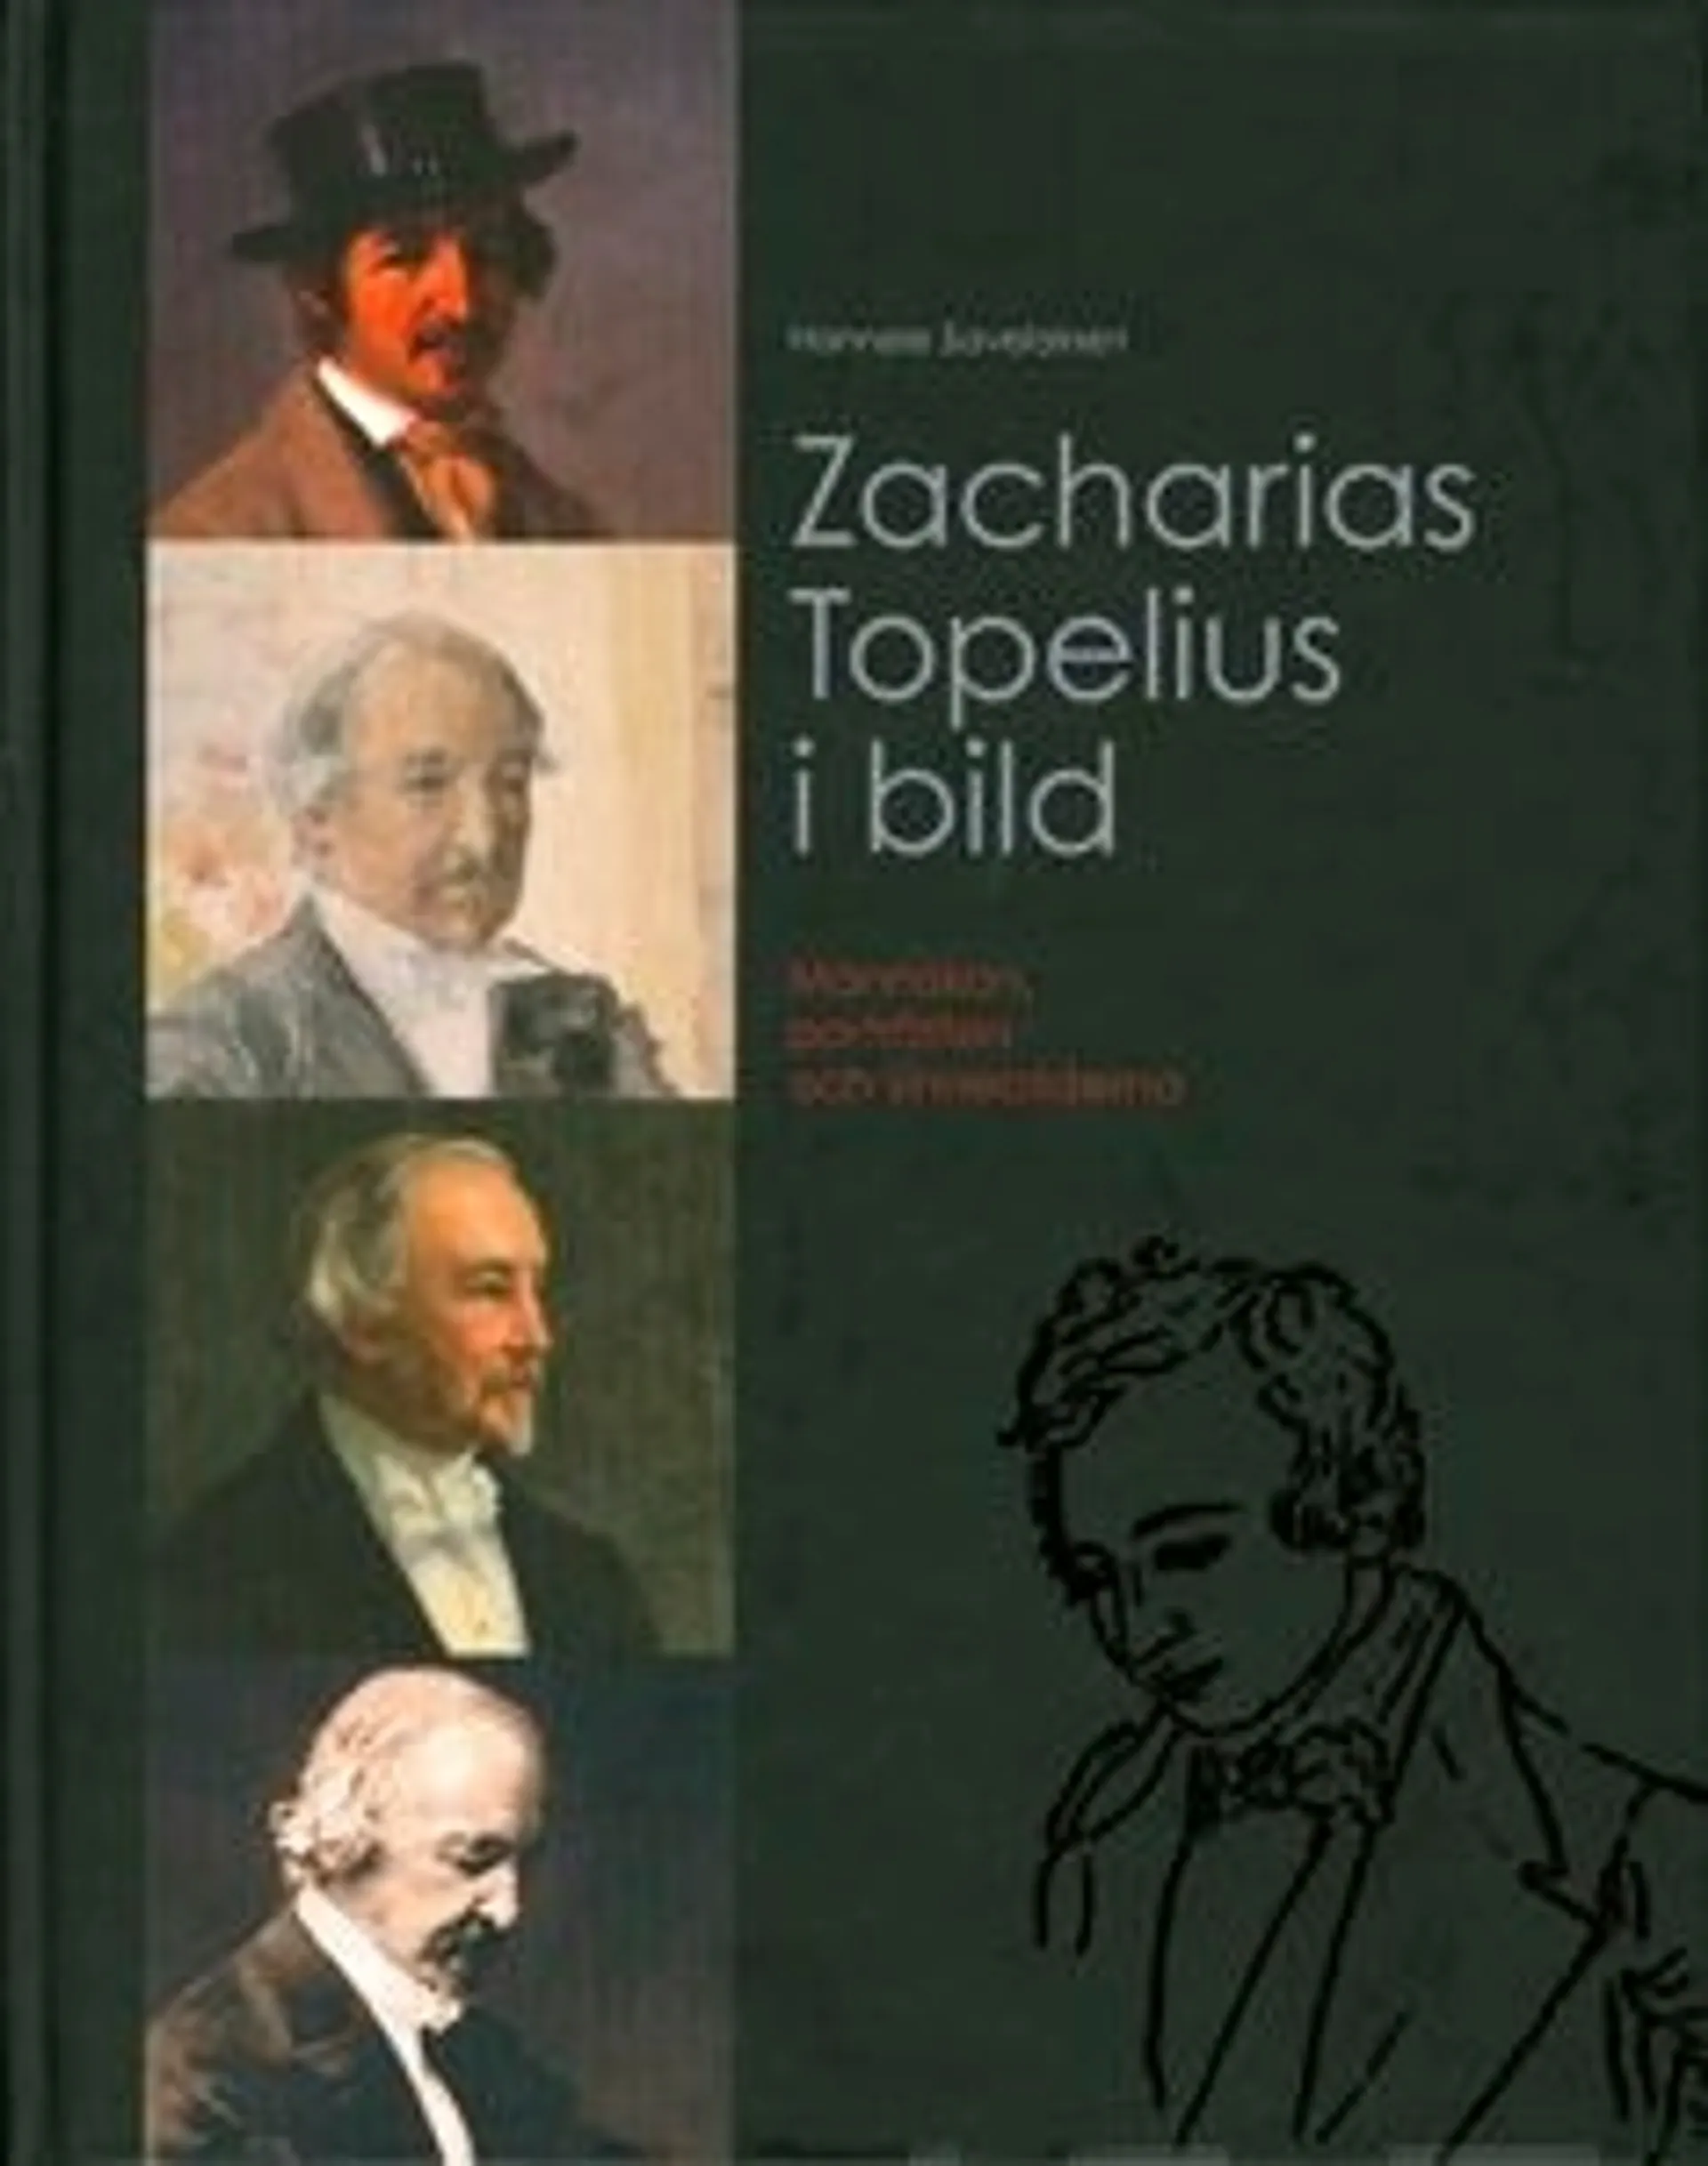 Savelainen, Zacharias Topelius i bild - människan, porträtten och sinnebilderna